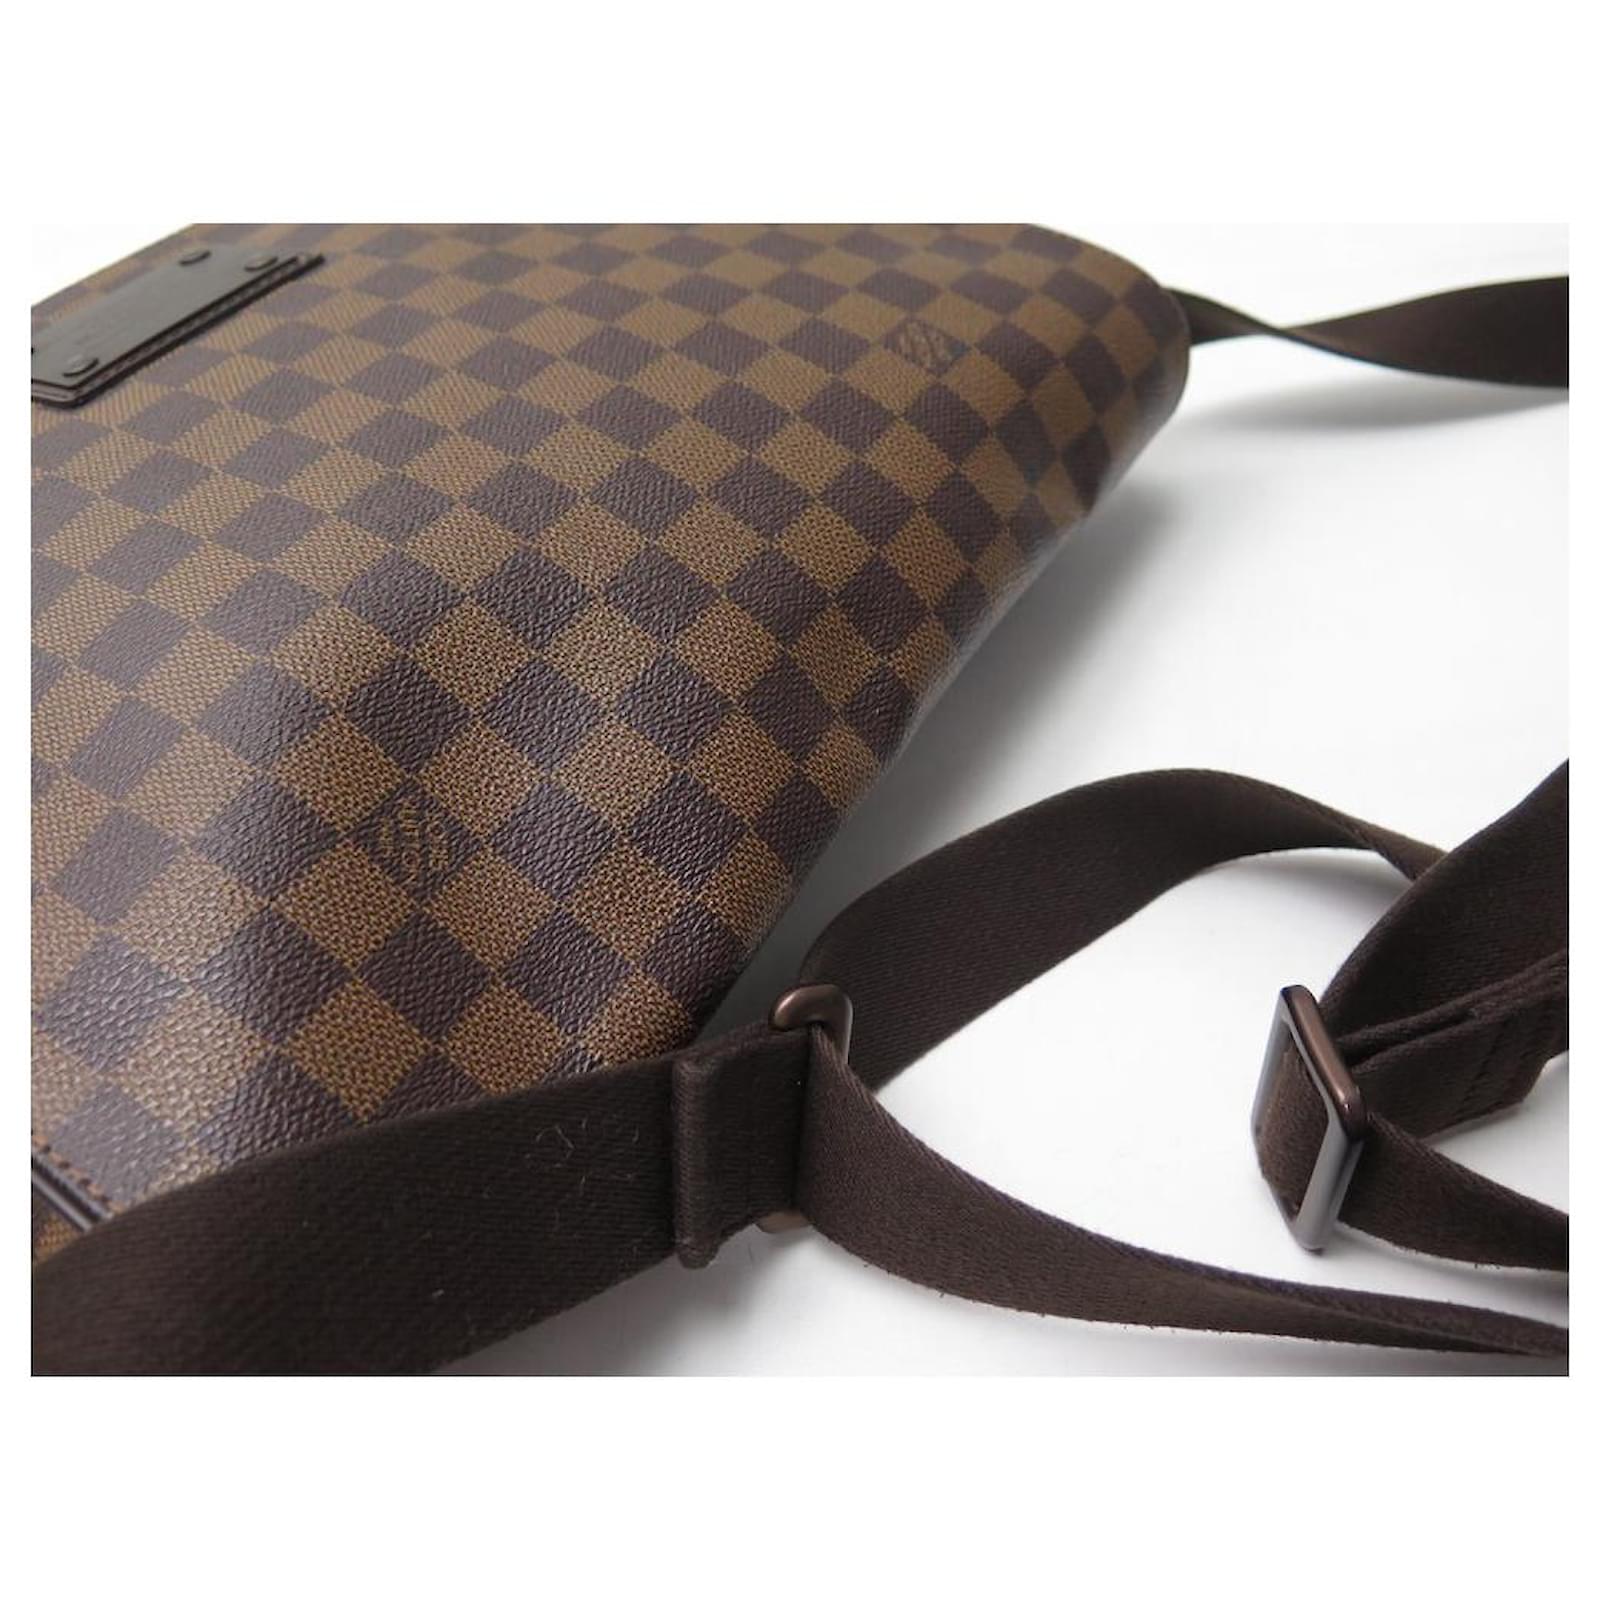 LOUIS VUITTON N51211 BROOKLYN MM MESSENGER BAG, Luxury, Bags